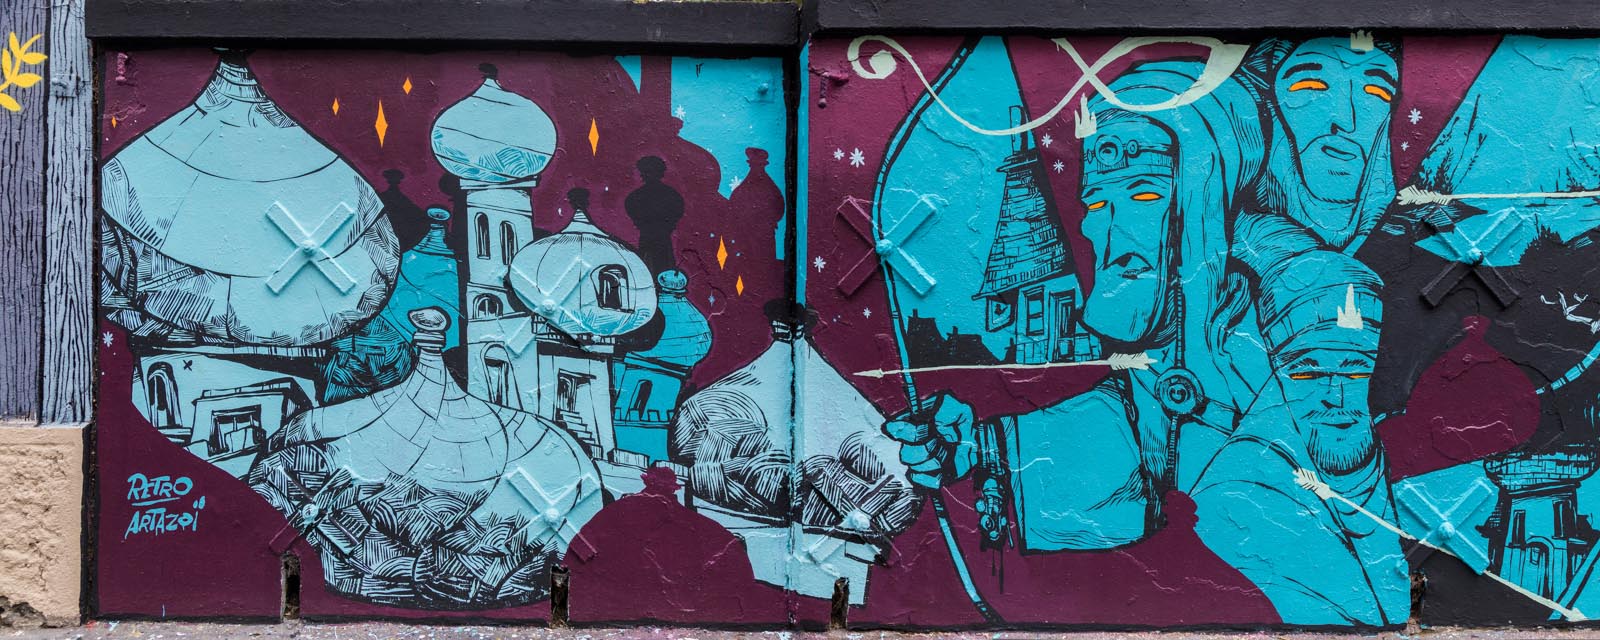 Rétro graffitism - La Princesse Grenouille - Mars 2017